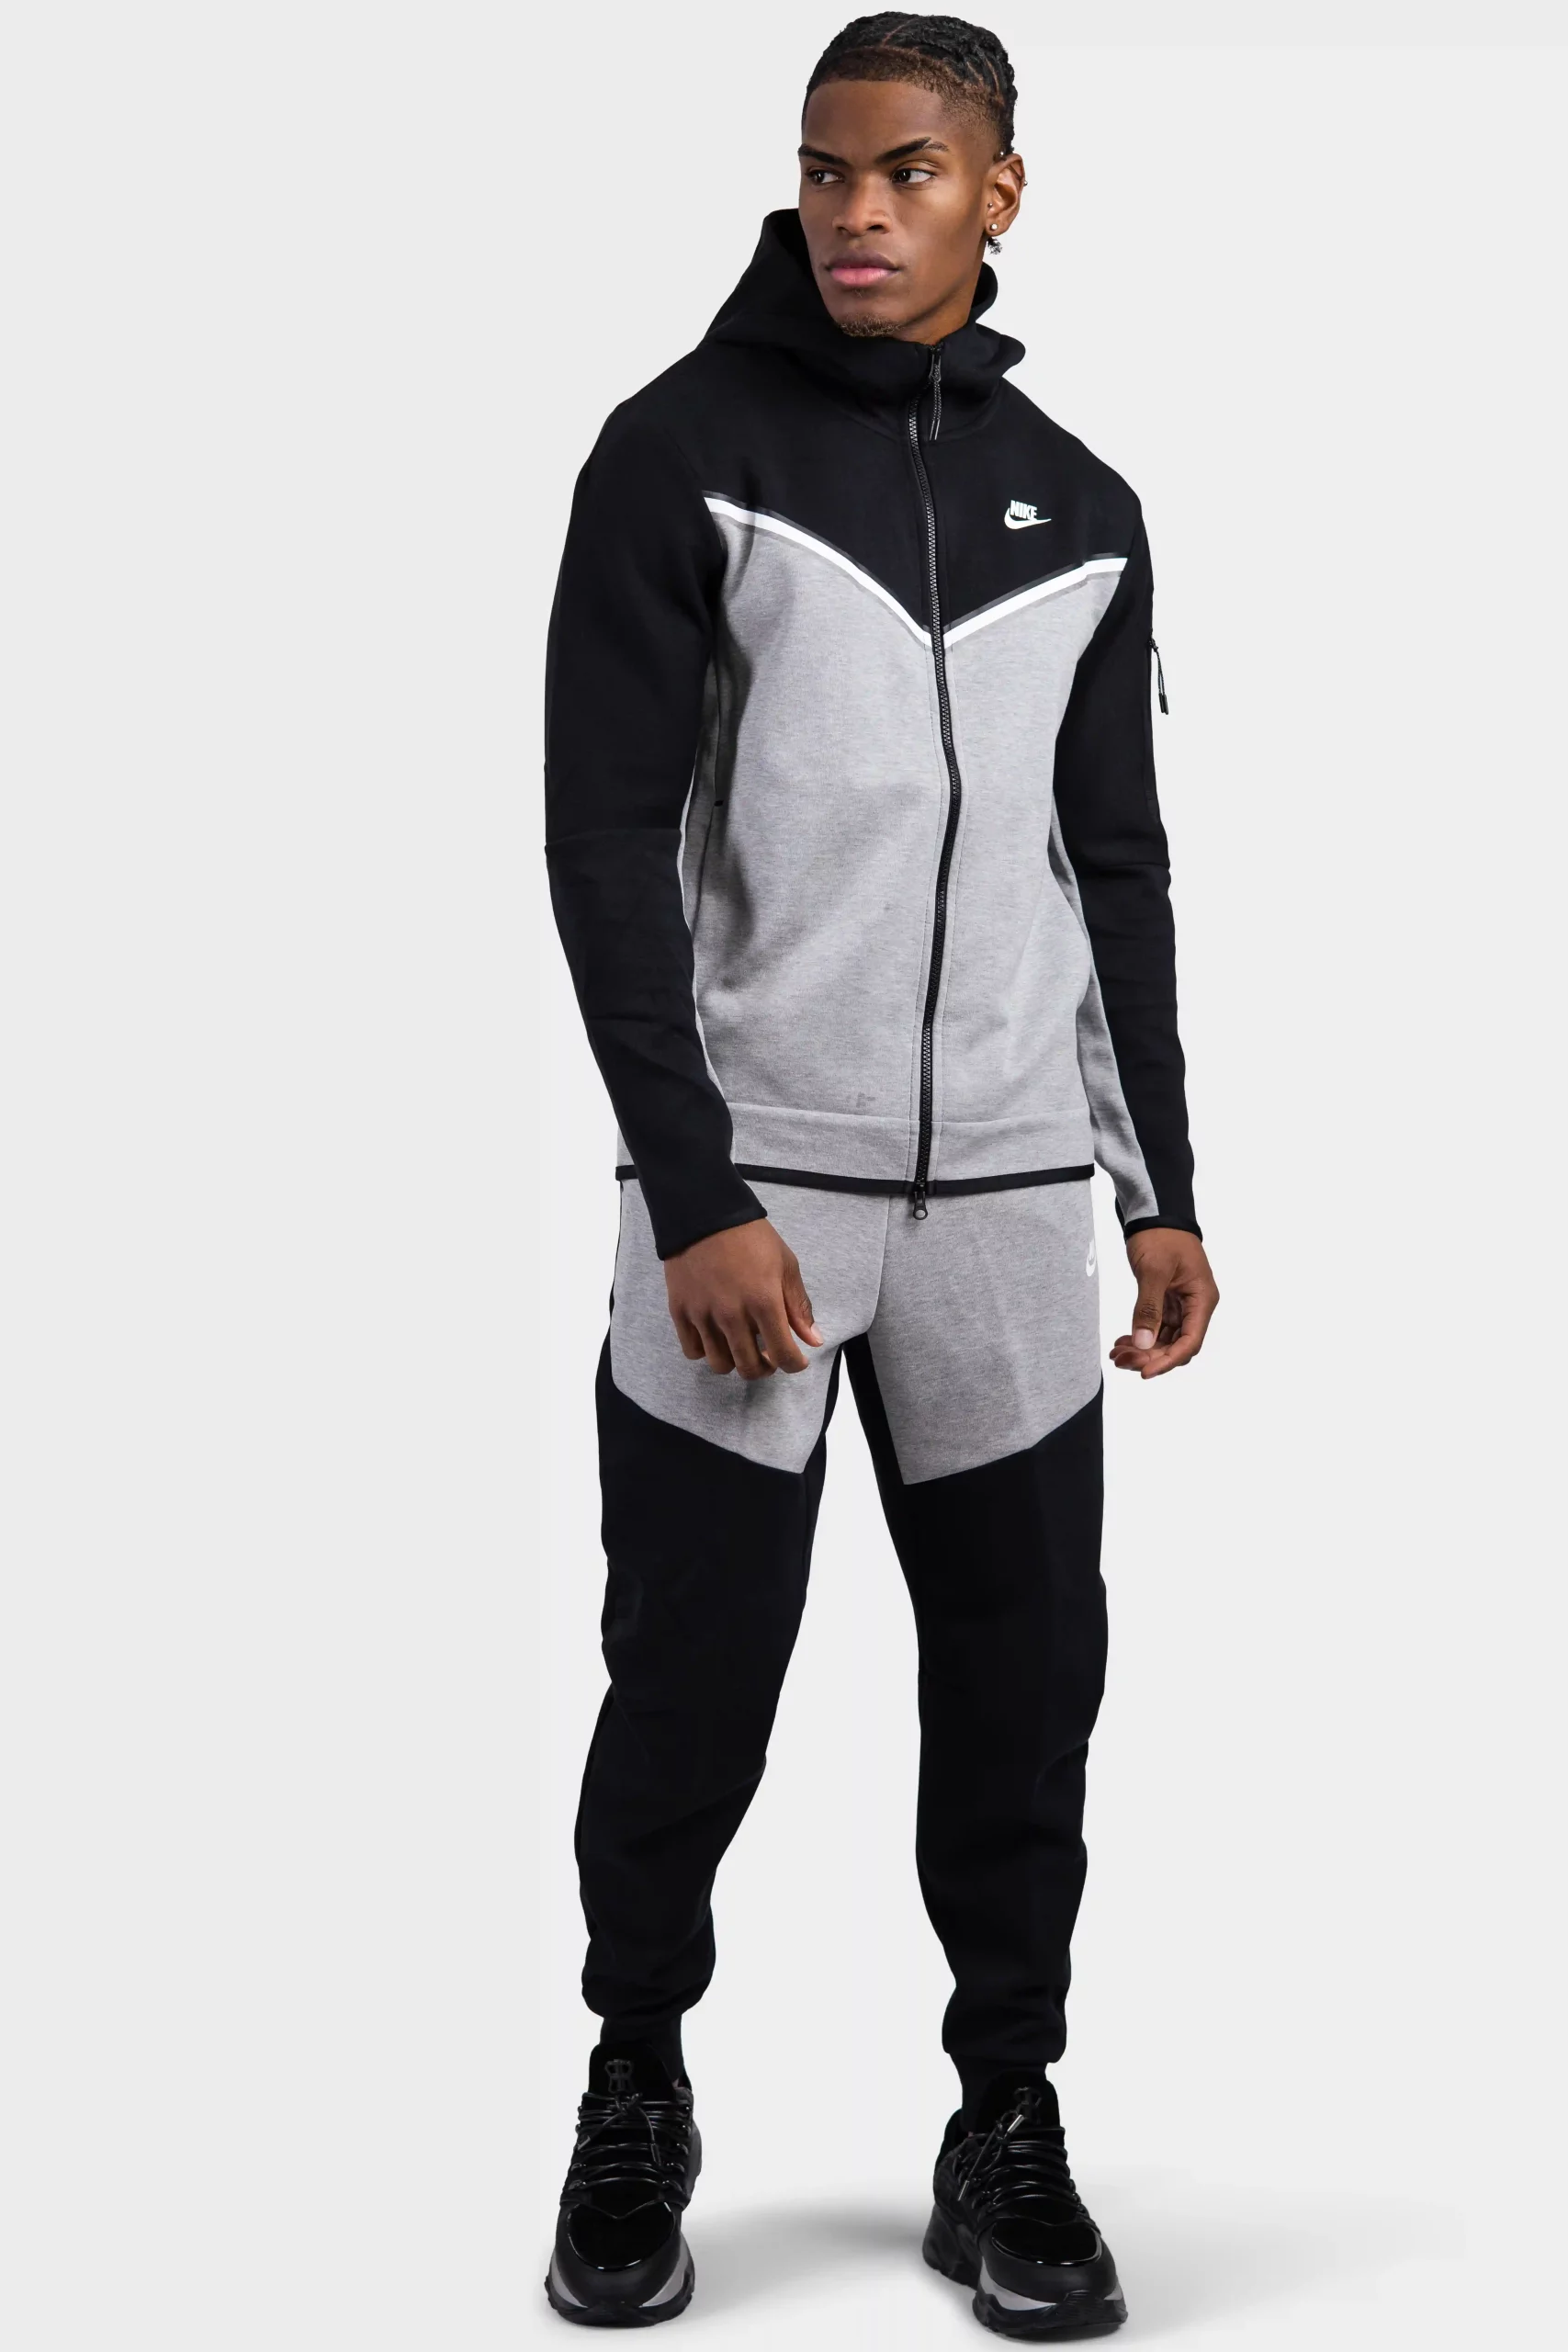 Th Over het algemeen staking Nike Tech Fleece Trainingspak Heren Zwart/Grijs Heren shoppen? |  Soccerfanshop BE